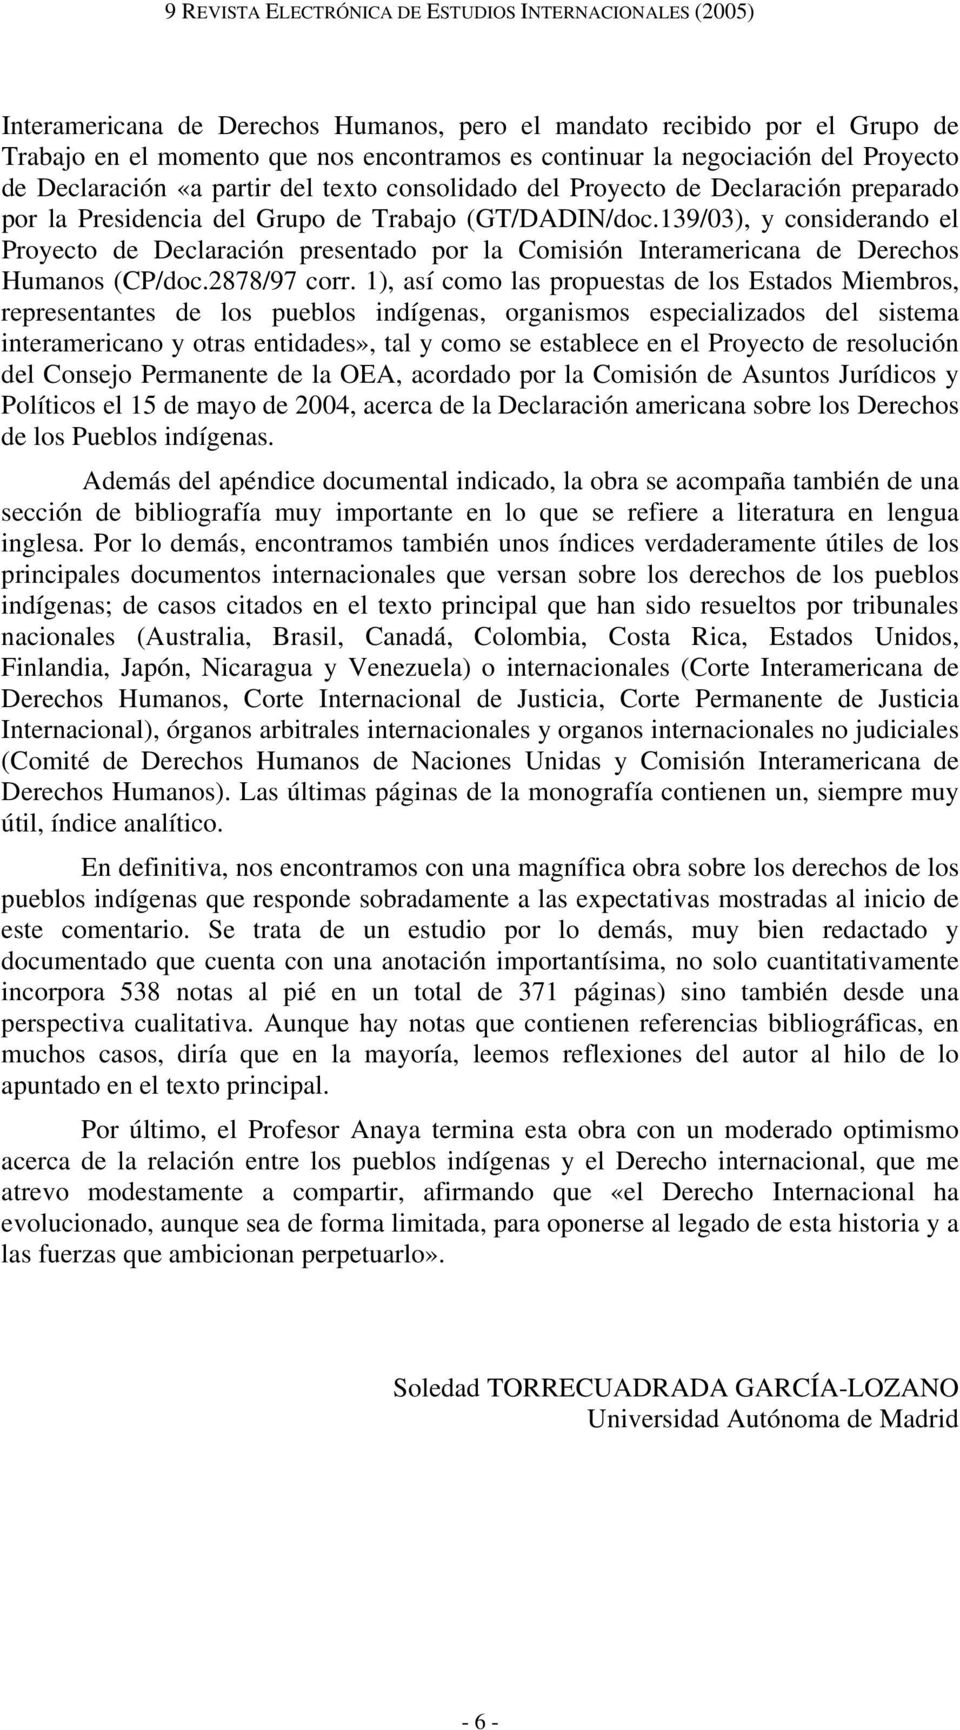 139/03), y considerando el Proyecto de Declaración presentado por la Comisión Interamericana de Derechos Humanos (CP/doc.2878/97 corr.